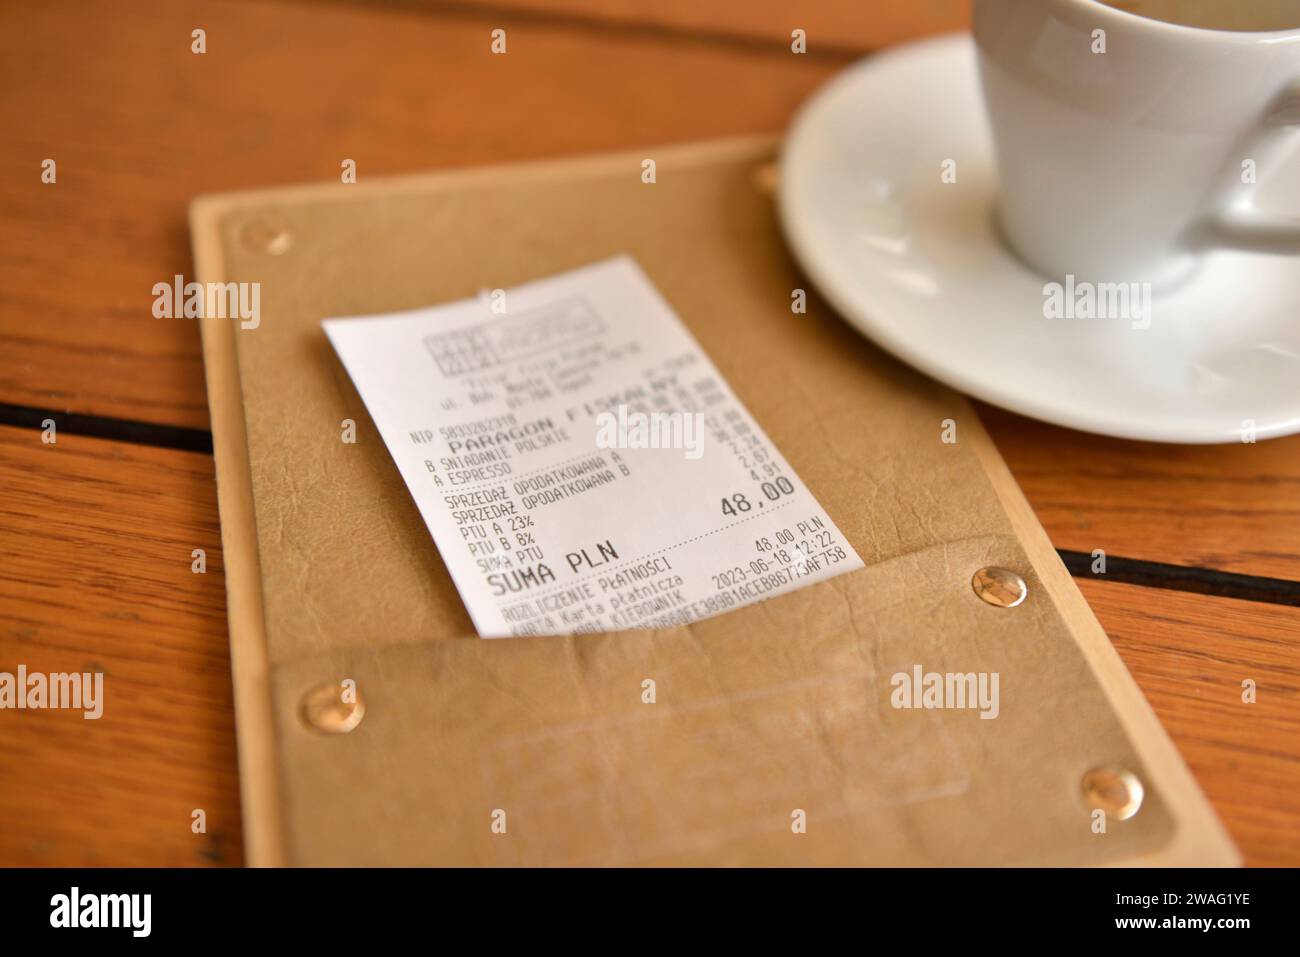 Fattura del ristorante, assegno o fino al ricevimento con l'importo dovuto in polacco złoty, Polonia, Europa, UE Foto Stock